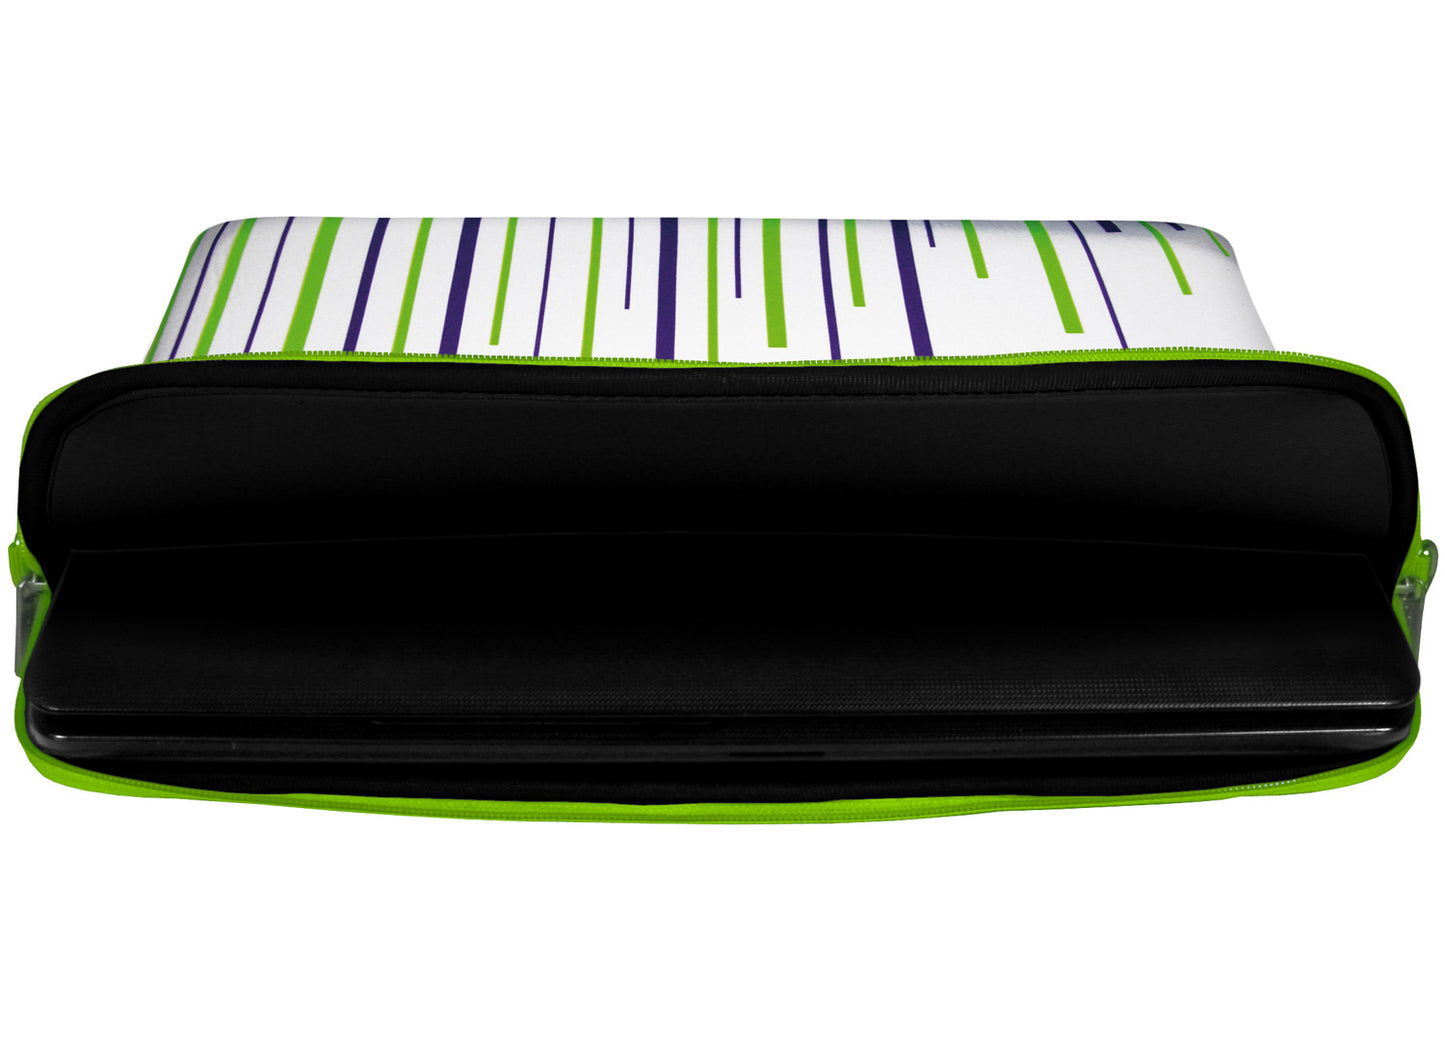 Innenansicht mit Schutzlippen der LS130 White Stripes Designer Laptop Tasche in schwarz aus wasserabweisendem Neopren